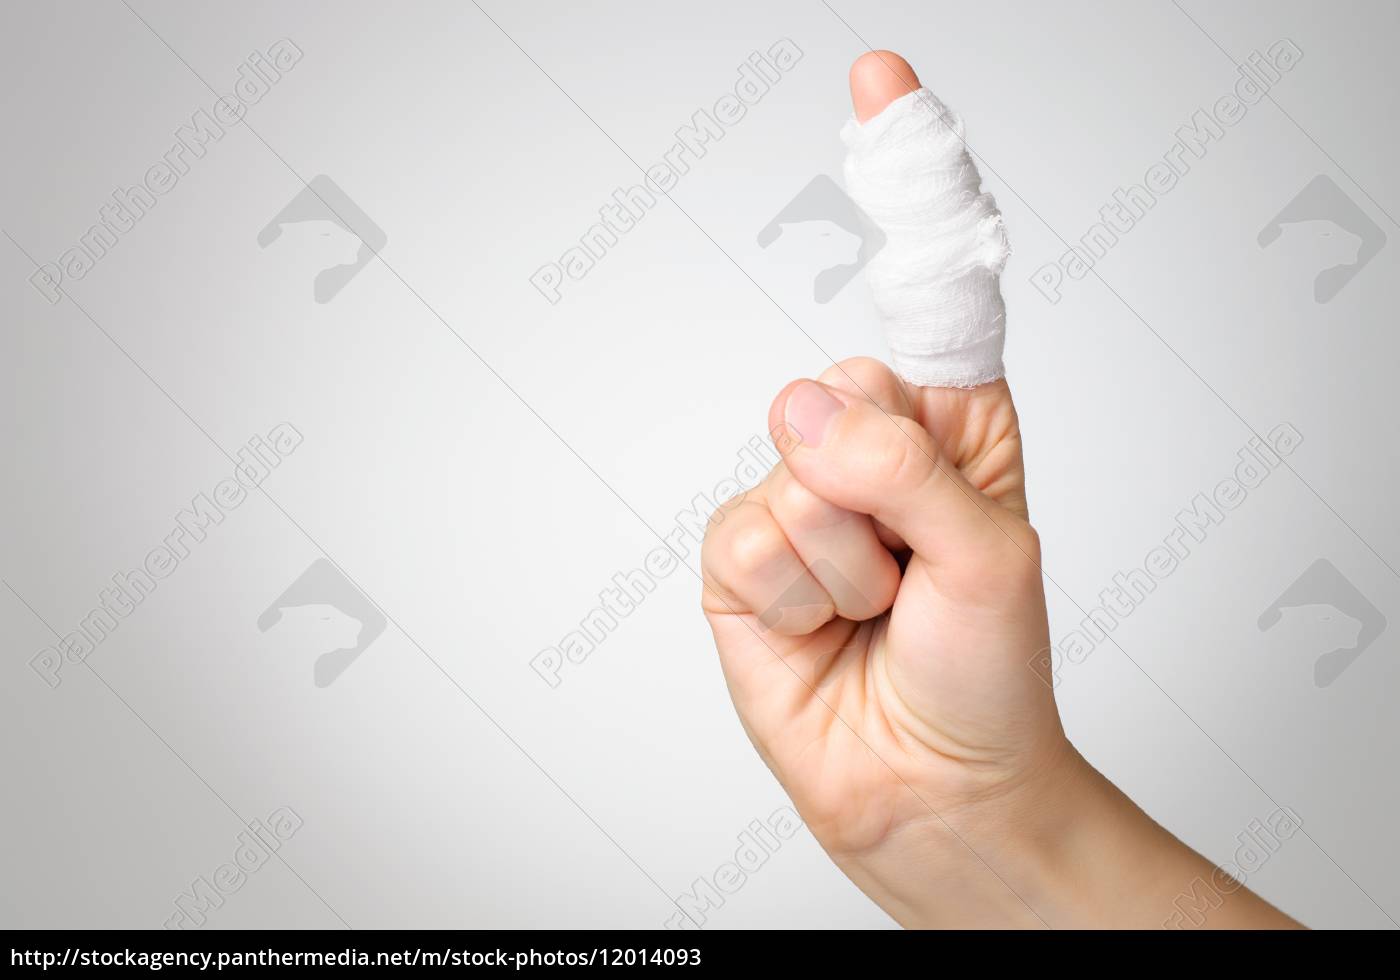 verletzter finger mit verband - Lizenzfreies Bild #12014093